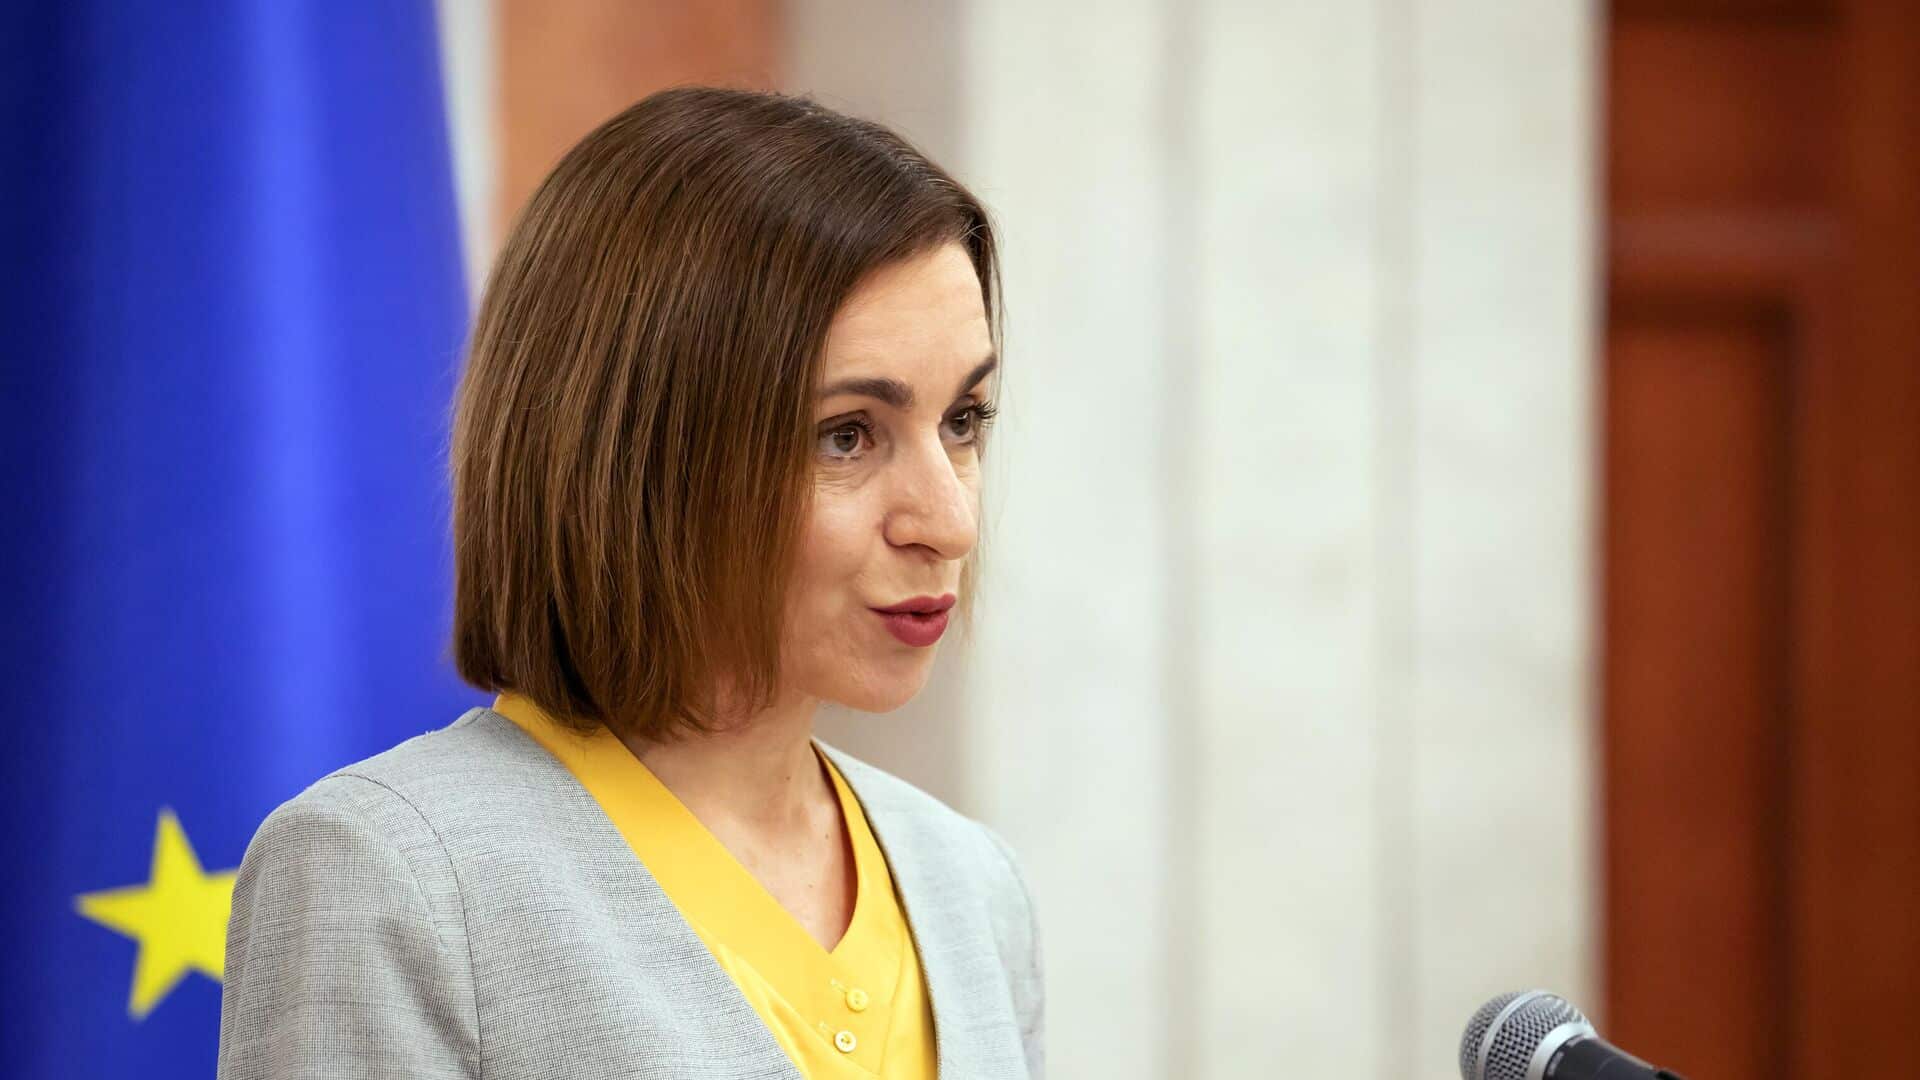 Санду: Молдова хочет вступить в ЕС как можно скорее, чтобы защититься от российской угрозы